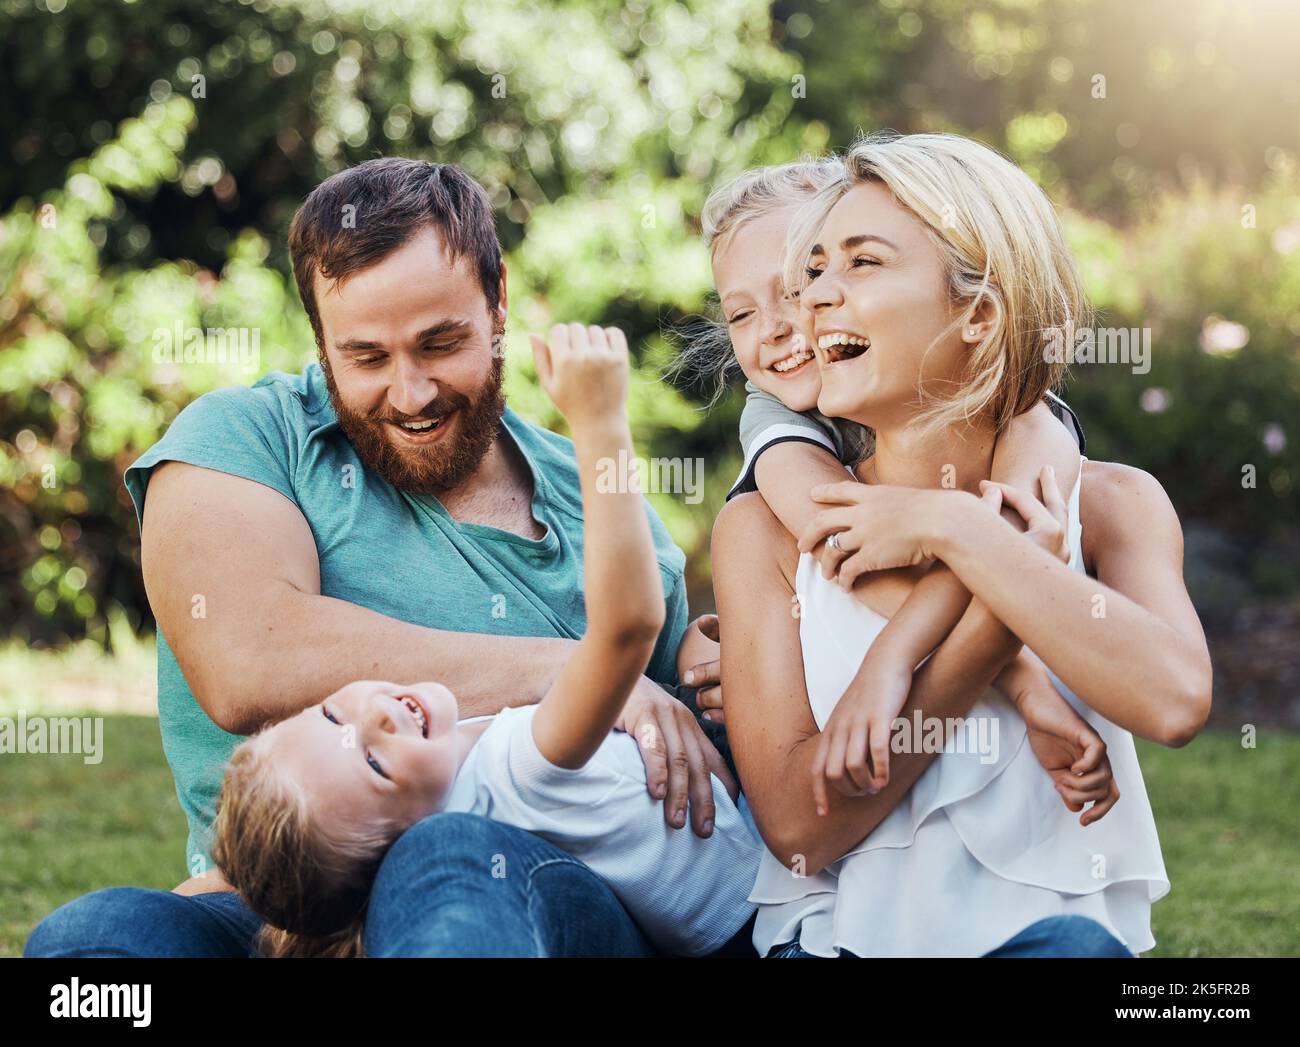 Familie, Kinder und Natur mit spielender Mutter, Kindern und Vater im Park im Sommer, lachen und Spaß zusammen haben. Glücklich, Freiheit und Stockfoto